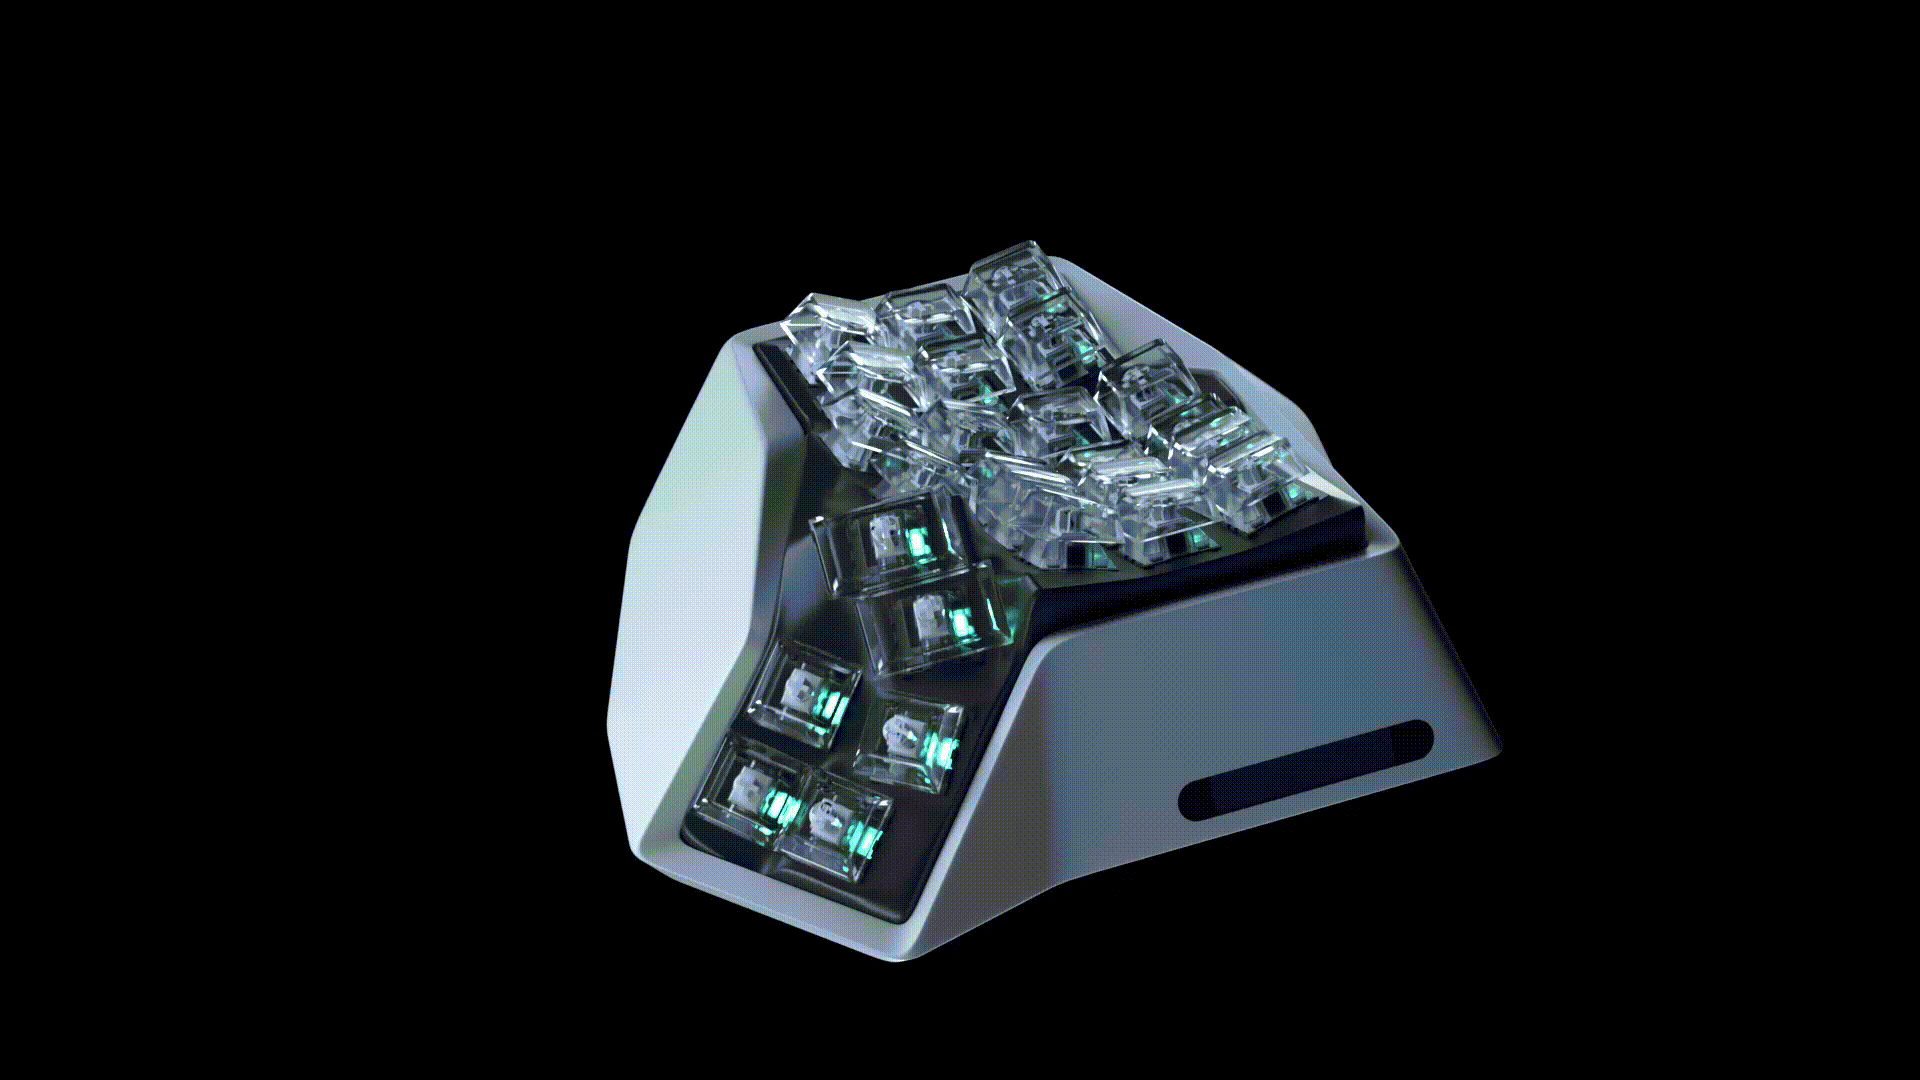 AM HATSU Organically 3D Shaped Wireless Split Keyboard by Angry Miao